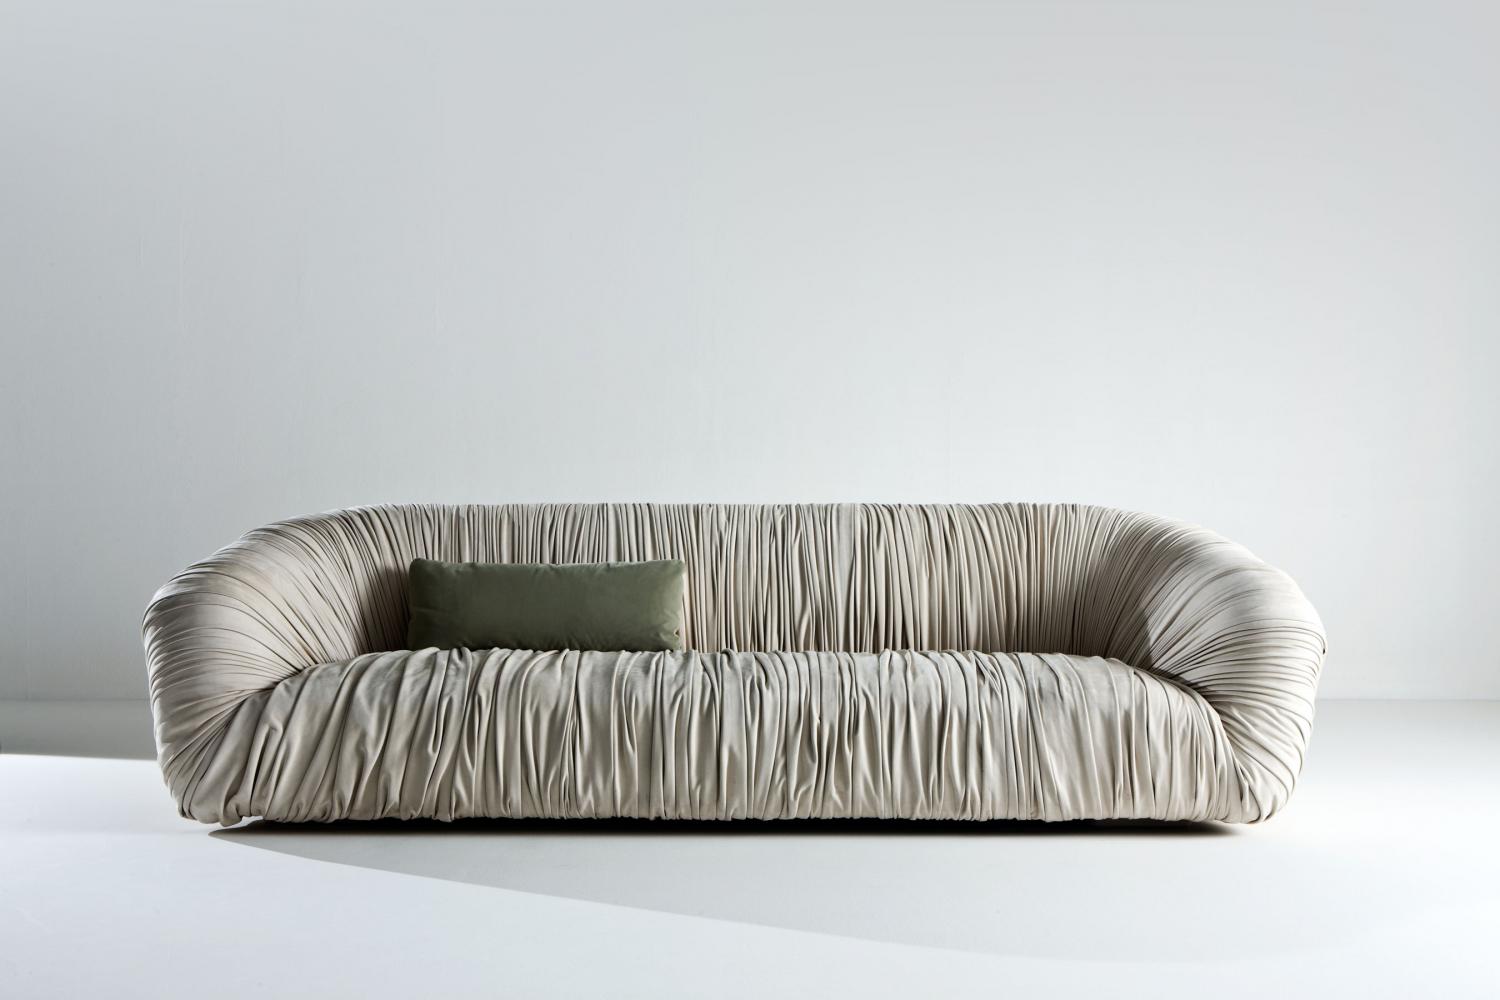 Drapè leather or velvet luxuxy Sofa with pleats